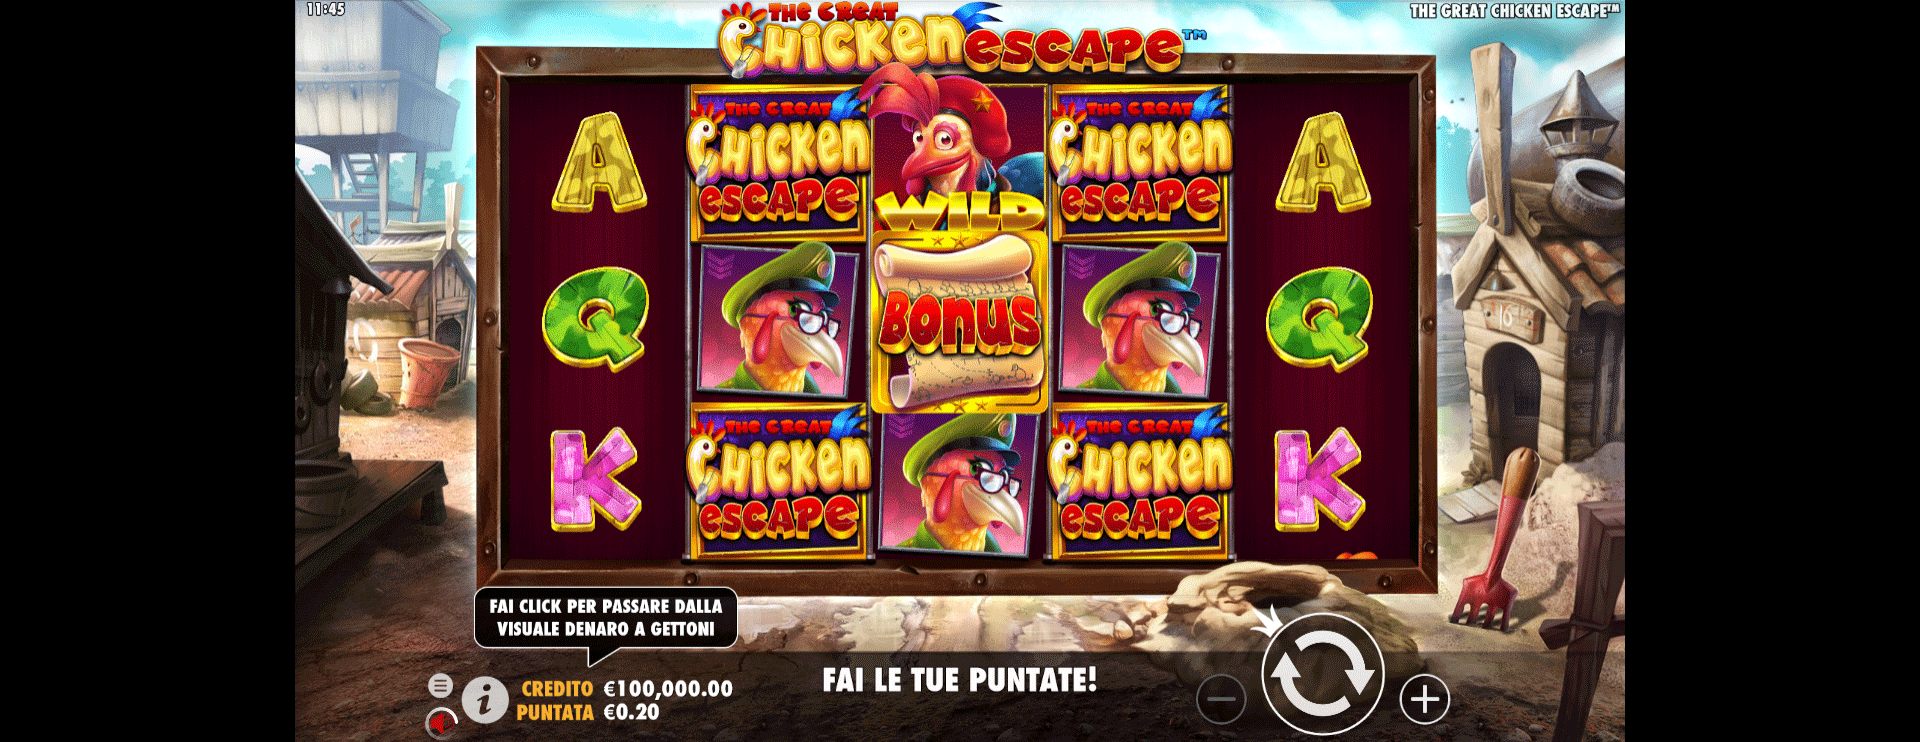 schermata slot machine the great chicken escape